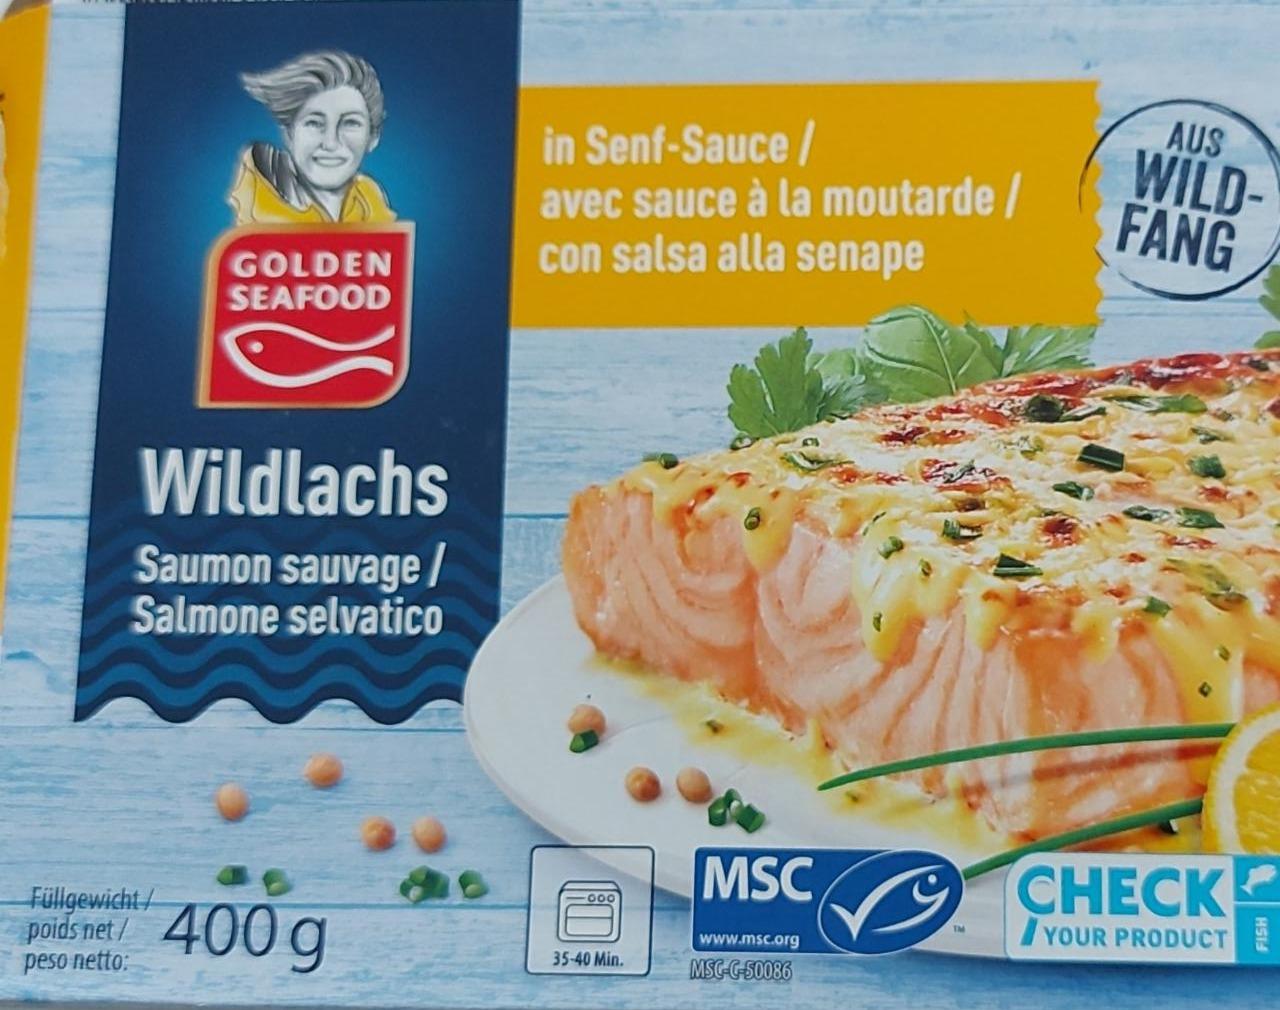 Fotografie - Wildlachs in Senf-Sauce Golden Seafood